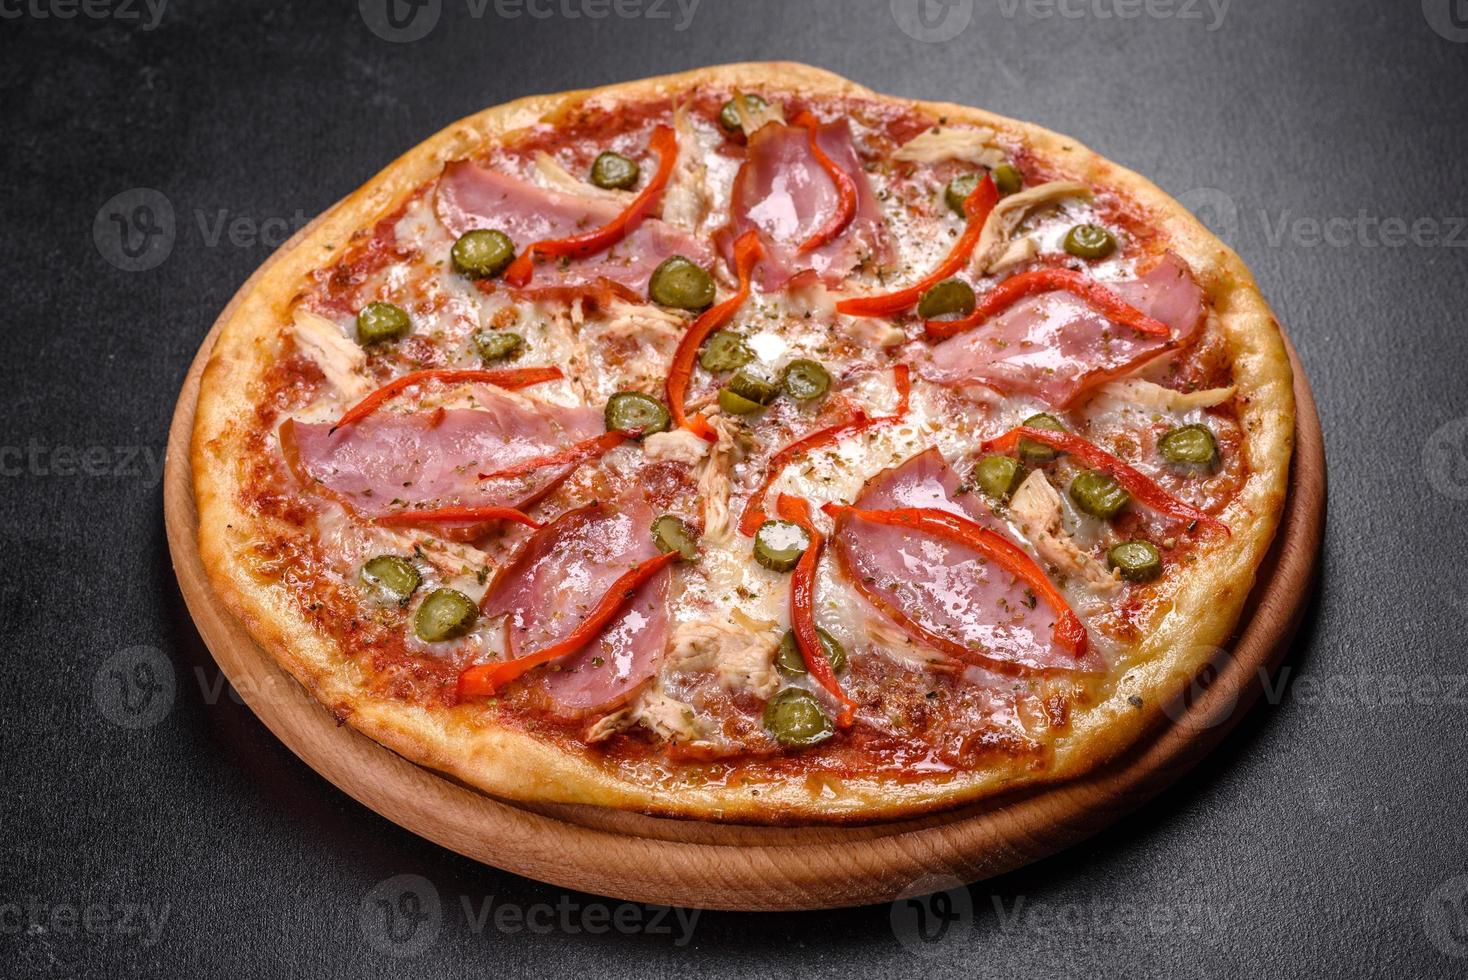 deliciosa pizza crocante fresca do forno com presunto e pimenta búlgara foto